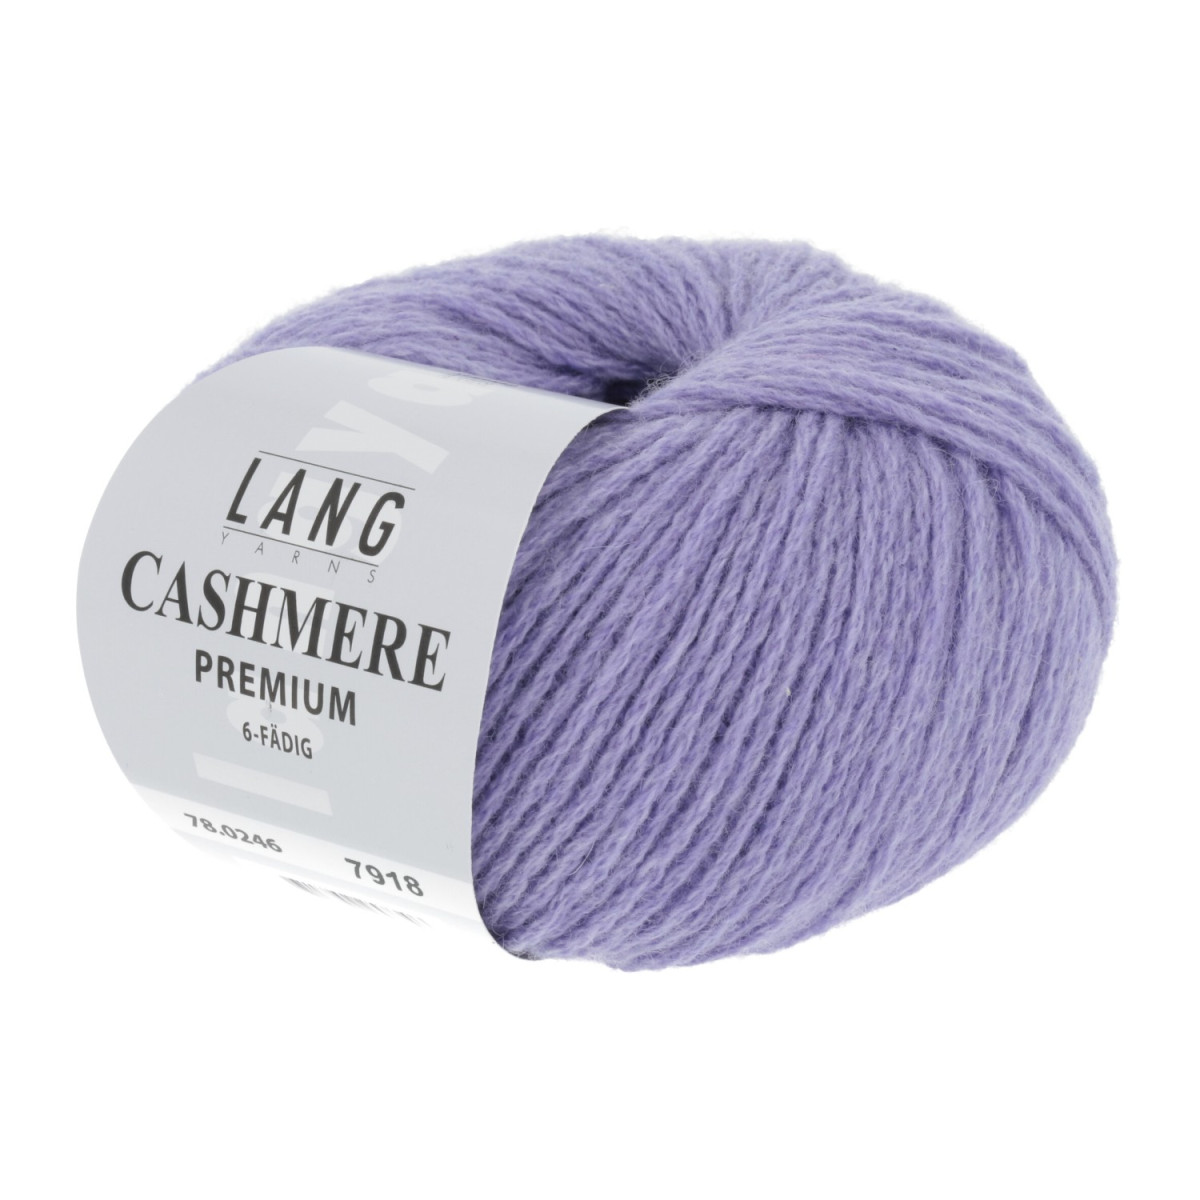 CASHMERE PREMIUM - FLIEDER (0246) | Naturwolle | Material | Wolle |  WolleWelten Onlineshop